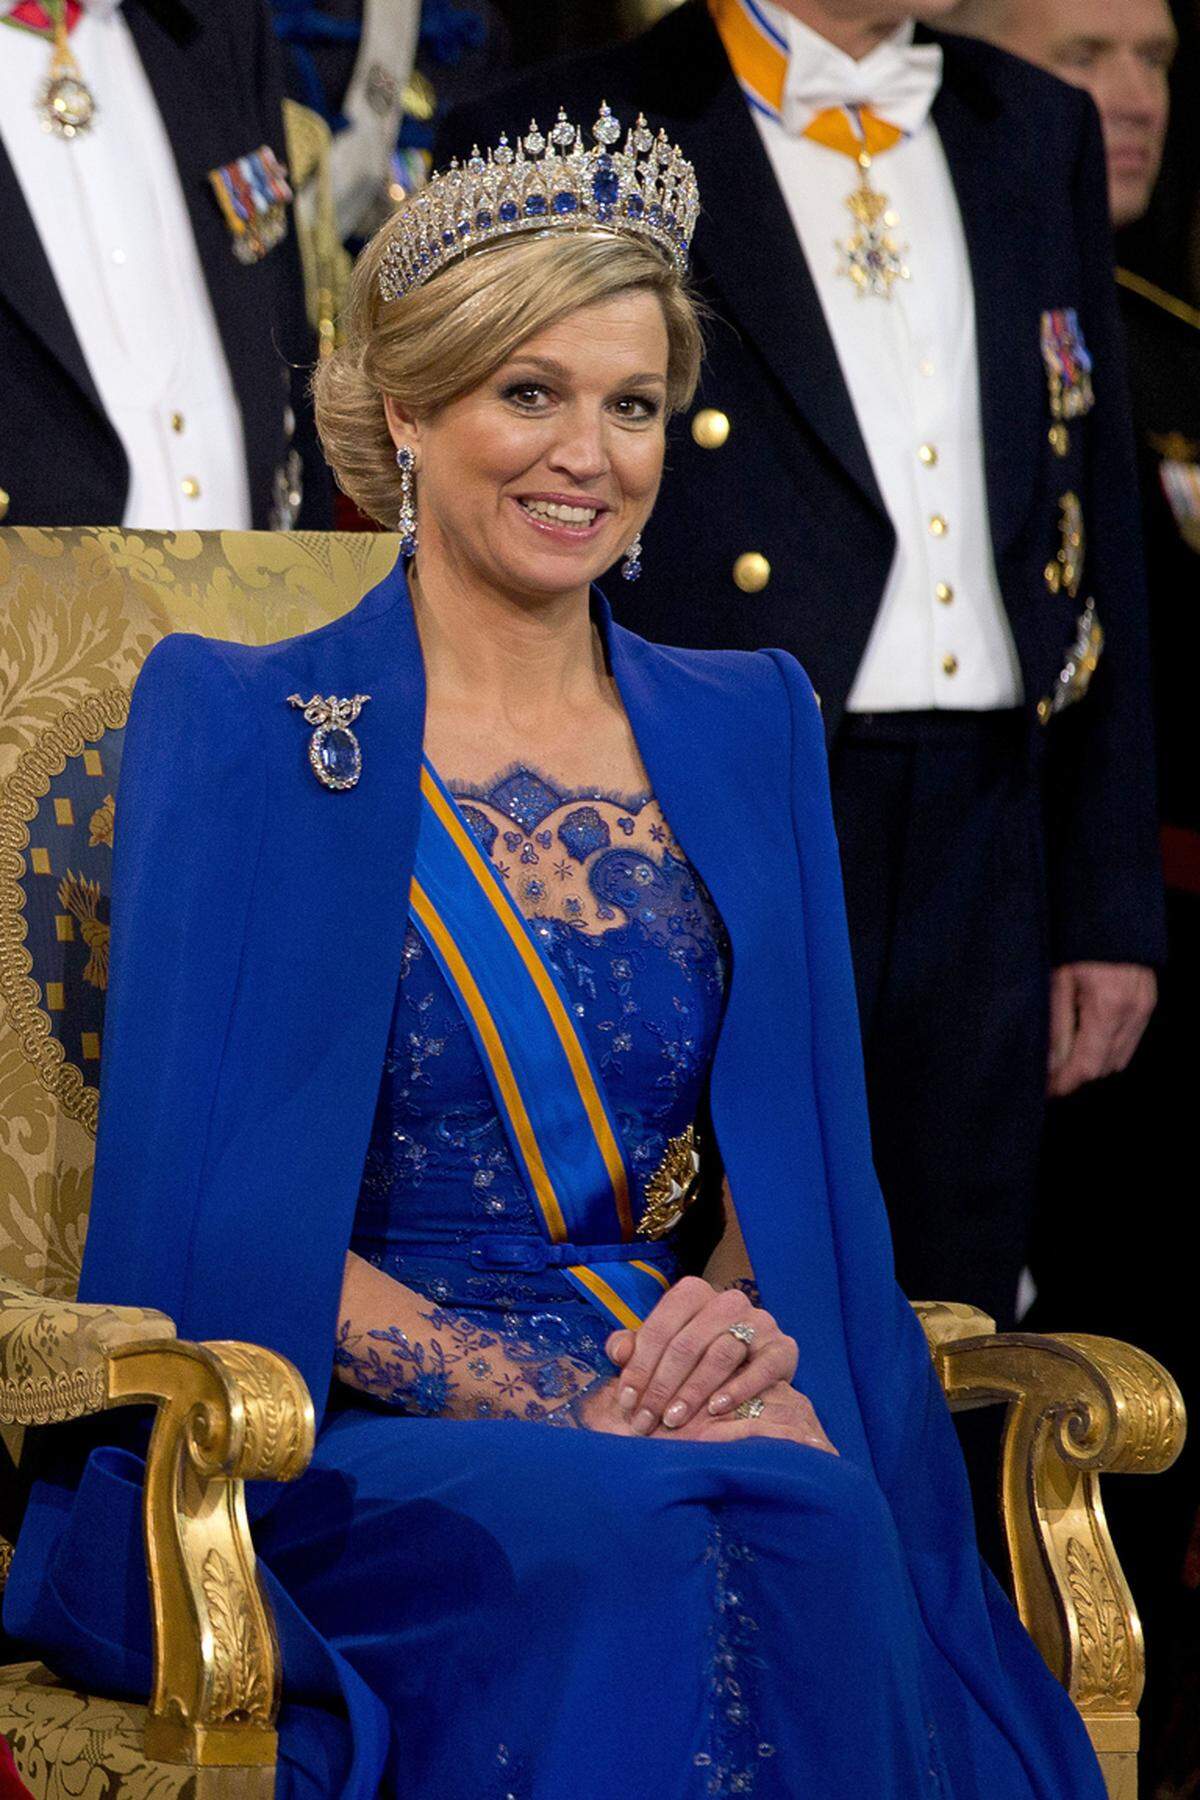 Rund ein Jahr ist es her, seit Maxima an der Seite ihres Ehemannes Willem-Alexander den Thron bestieg. Nach der Abdankung von König Juan Carlos wird Letizia von Spanien die neue Regentin des Landes. Die beiden Monarchinnen im Stil-Check: Für die Inthronisierung wählte Maxima royales Blau.